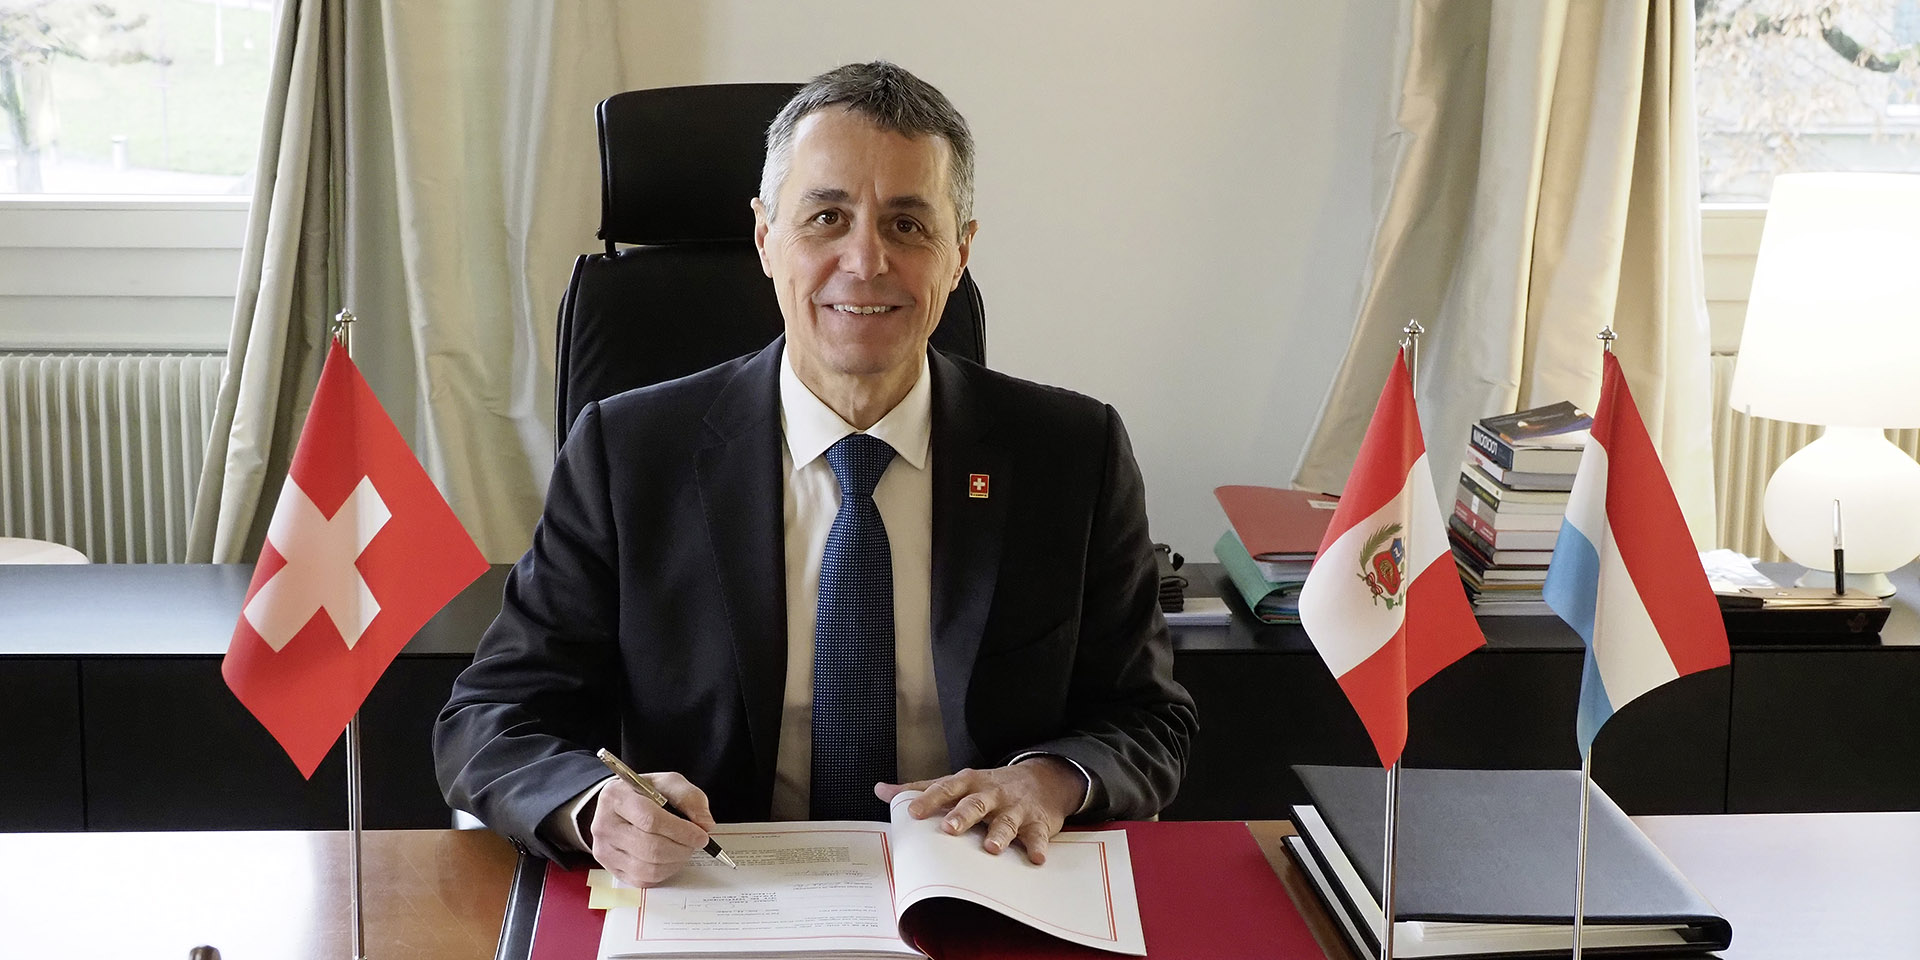 Le Conseiller fédéral Ignazio Cassis signe un document. Sur son bureau, apparaissent les drapeaux de la Suisse (à sa droite), du Pérou et du Luxembourg (à sa gauche).